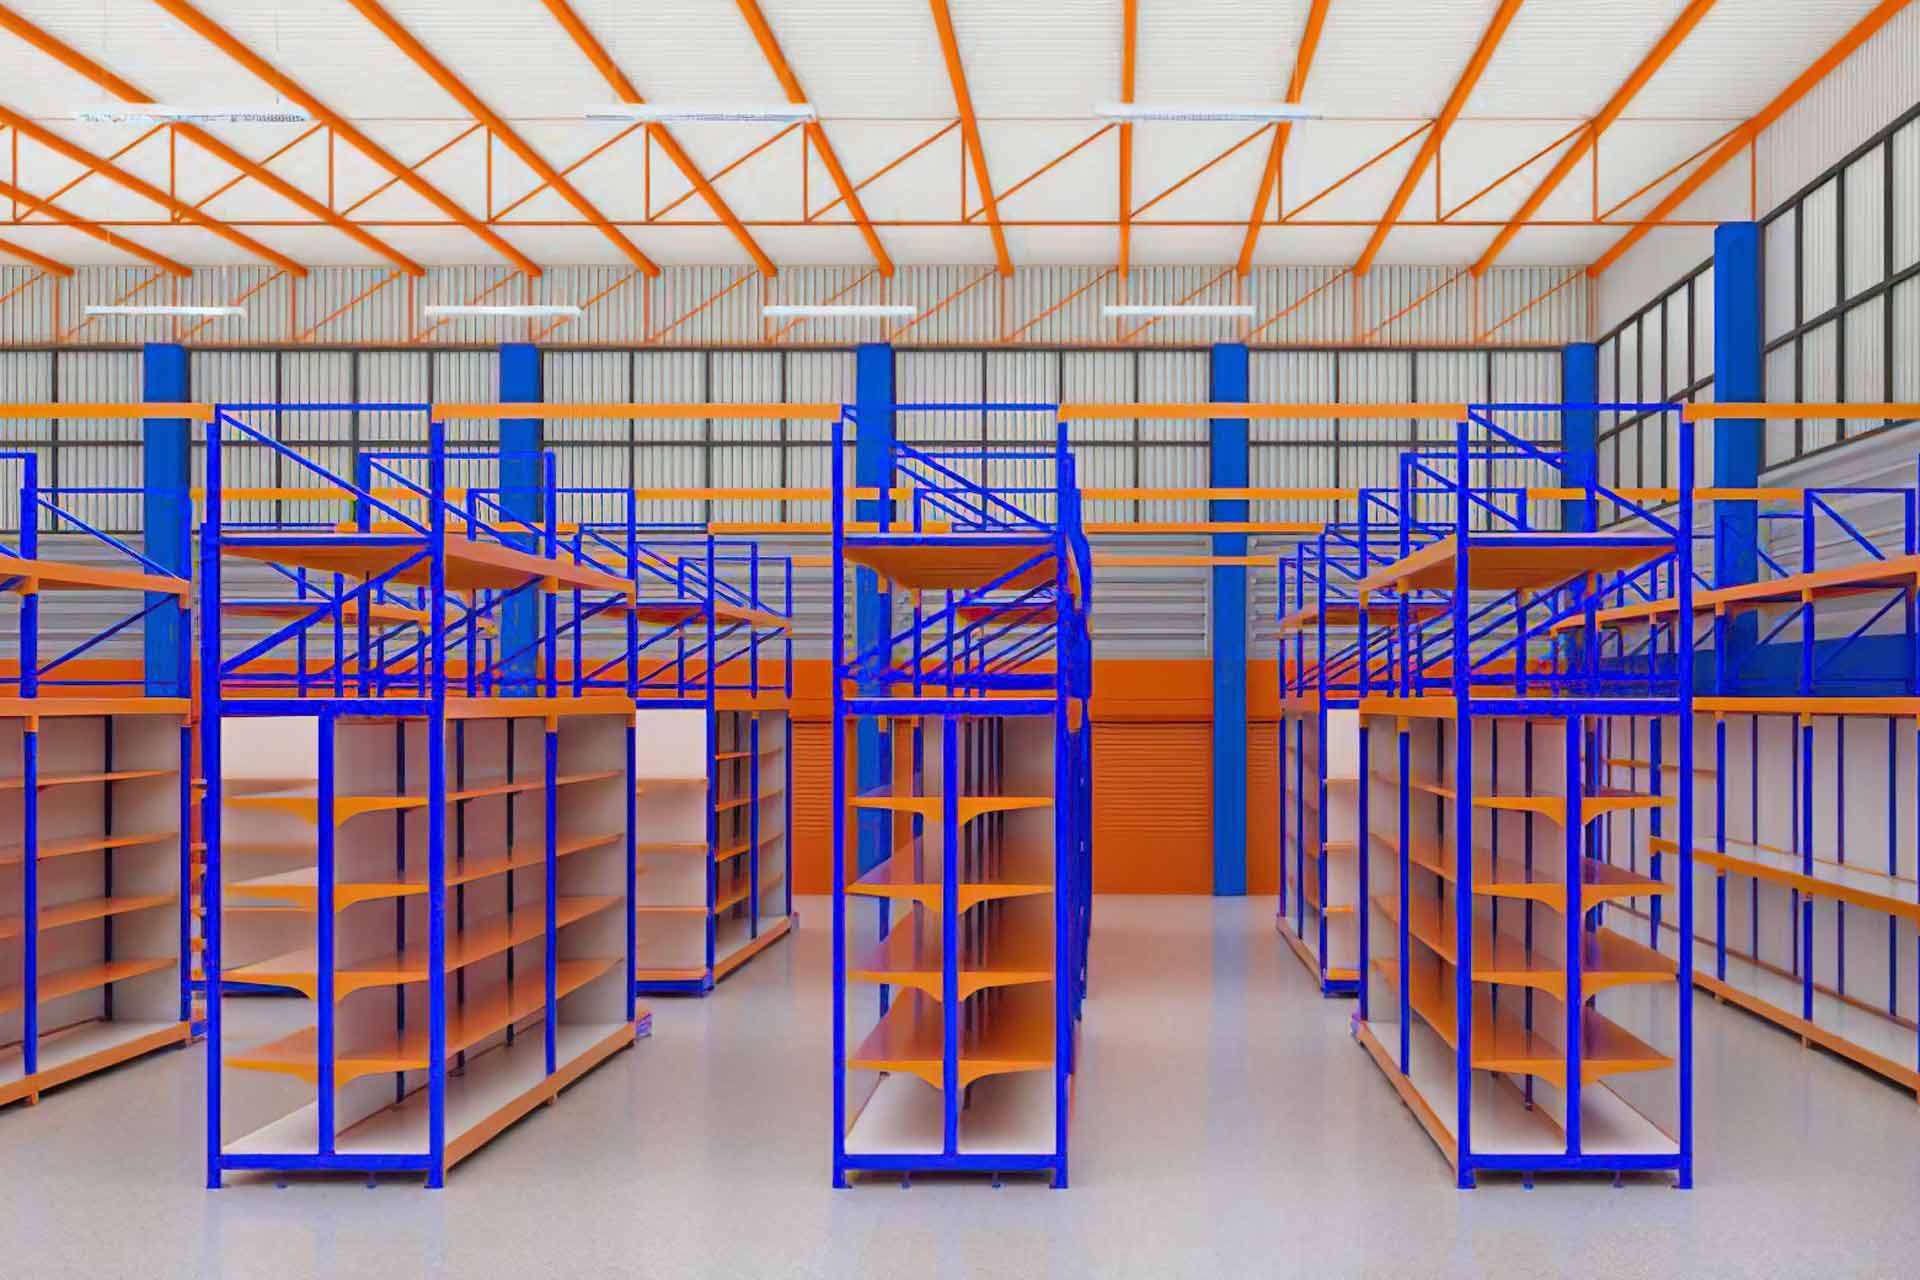 ออกแบบจัดวางสินค้าสีน้ำเงิน-ส้ม 3D ร้านท่าแซะการเกษตร